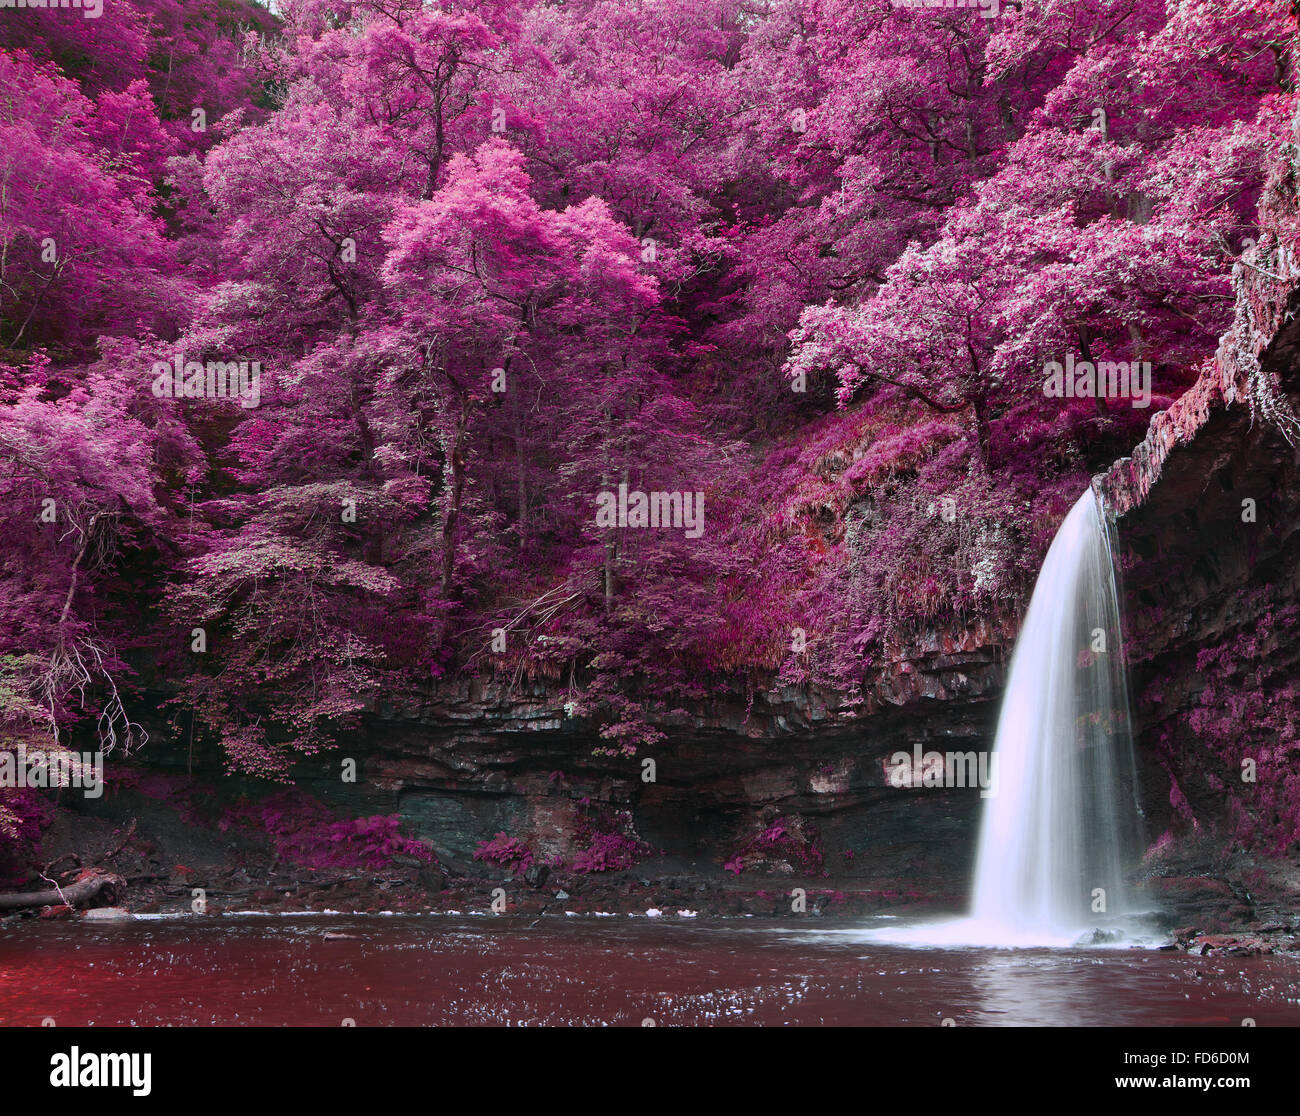 Straordinaria realtà alternativa colorata foresta di fantasia e paesaggio fluviale Foto Stock